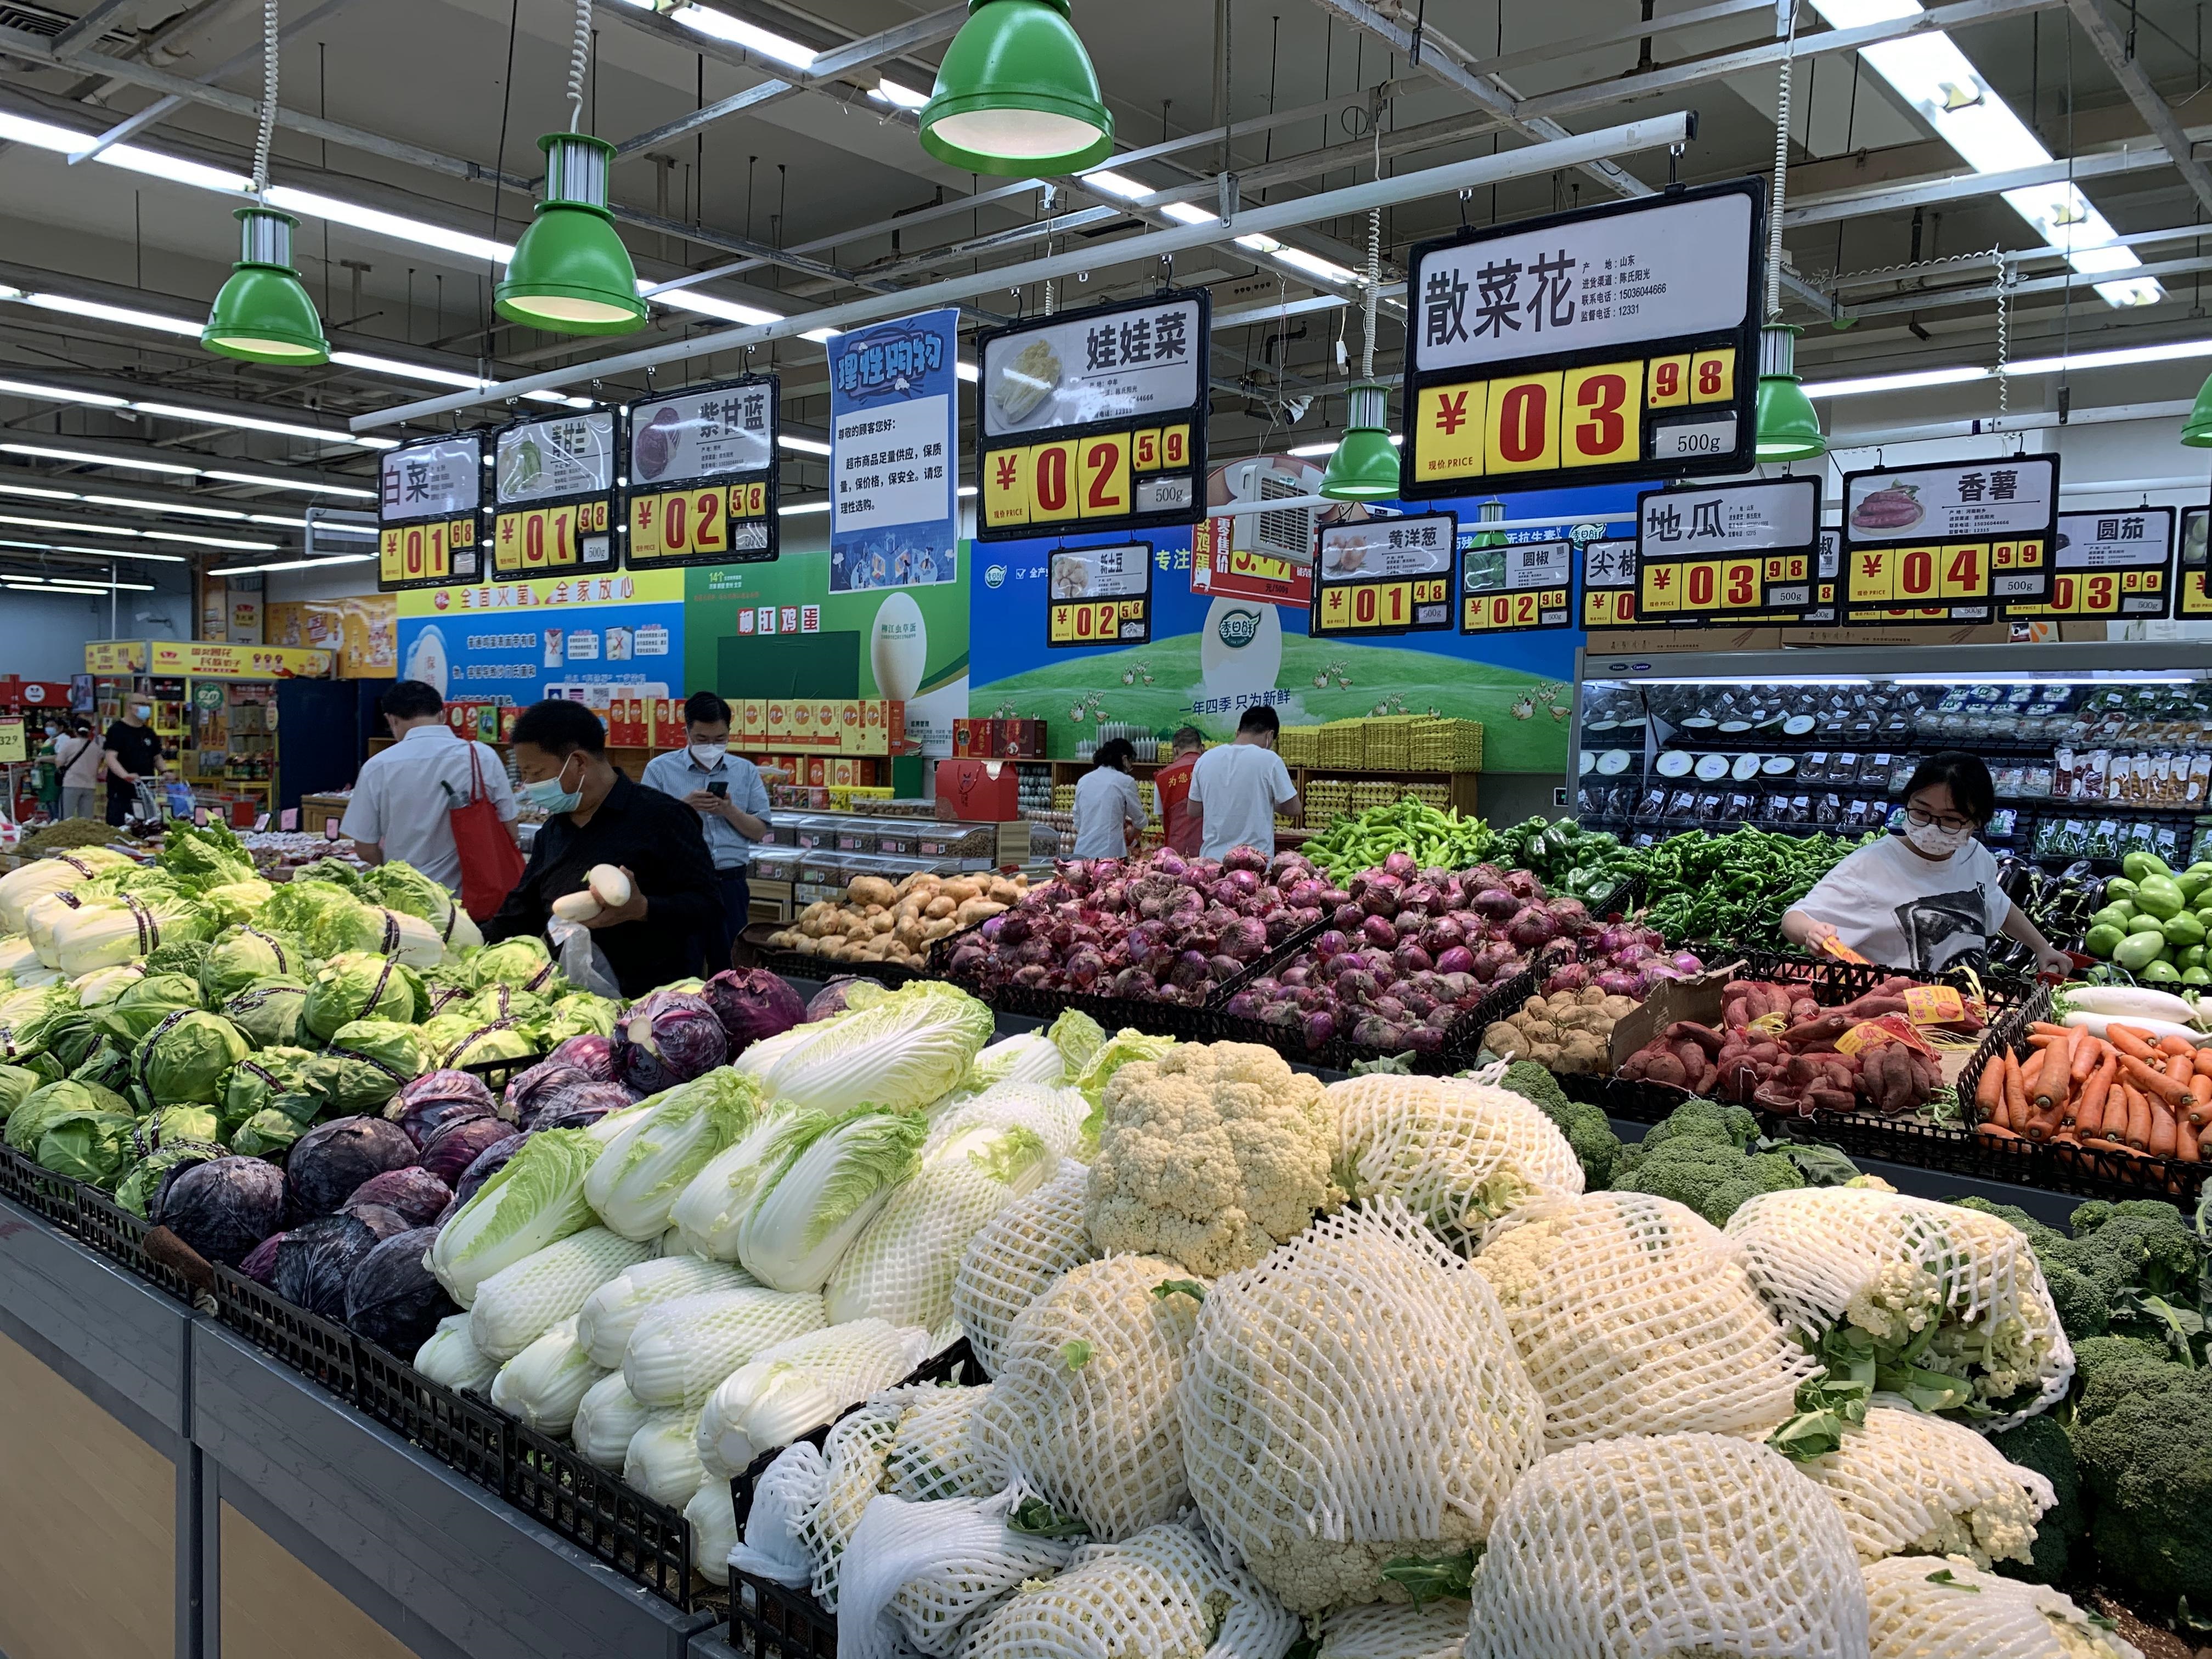 郑州超市的生活必需品供应是否充足？商品供应充足，购物秩序井然